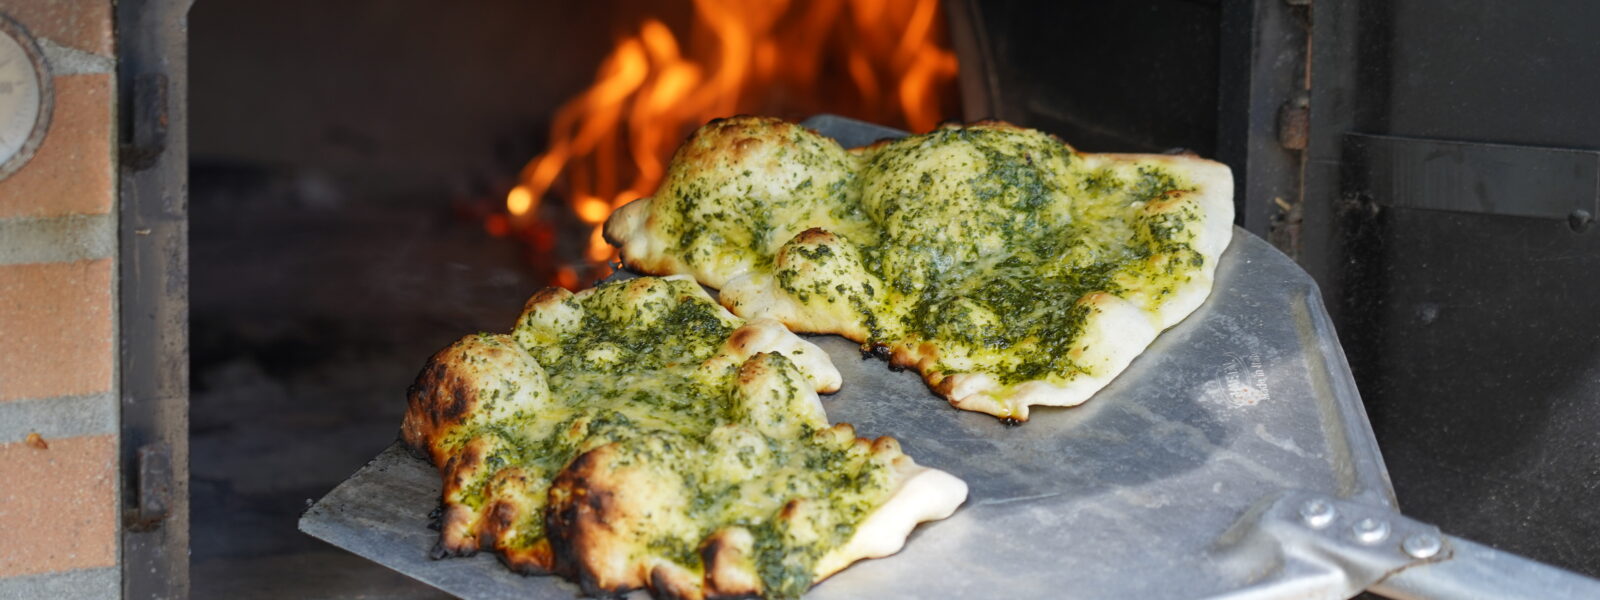 Vild pizza i brændefyret stenovn – med naturens ingredienser